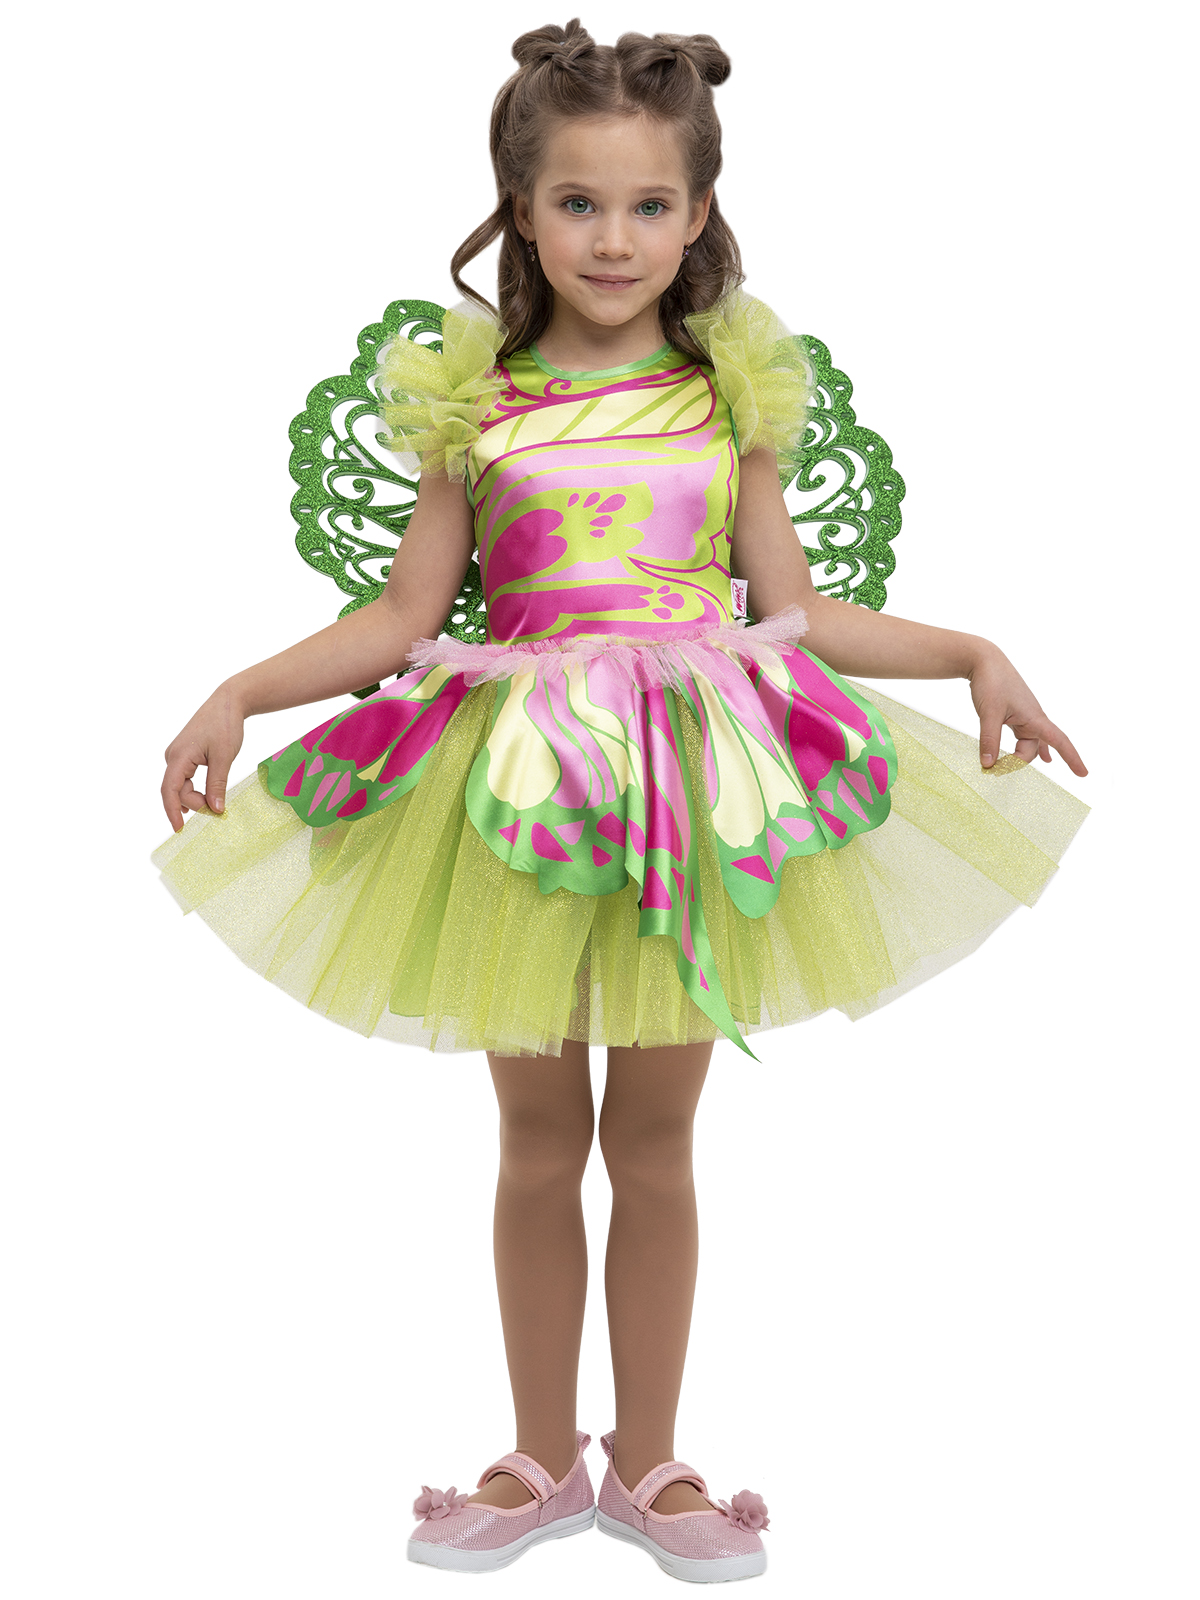 Карнавальный костюм Вестифика Костюм Винкс, зеленый/розовый, 116 музыкальный инструмент глюкофон зеленый 8 лепестков 15 х 9 см